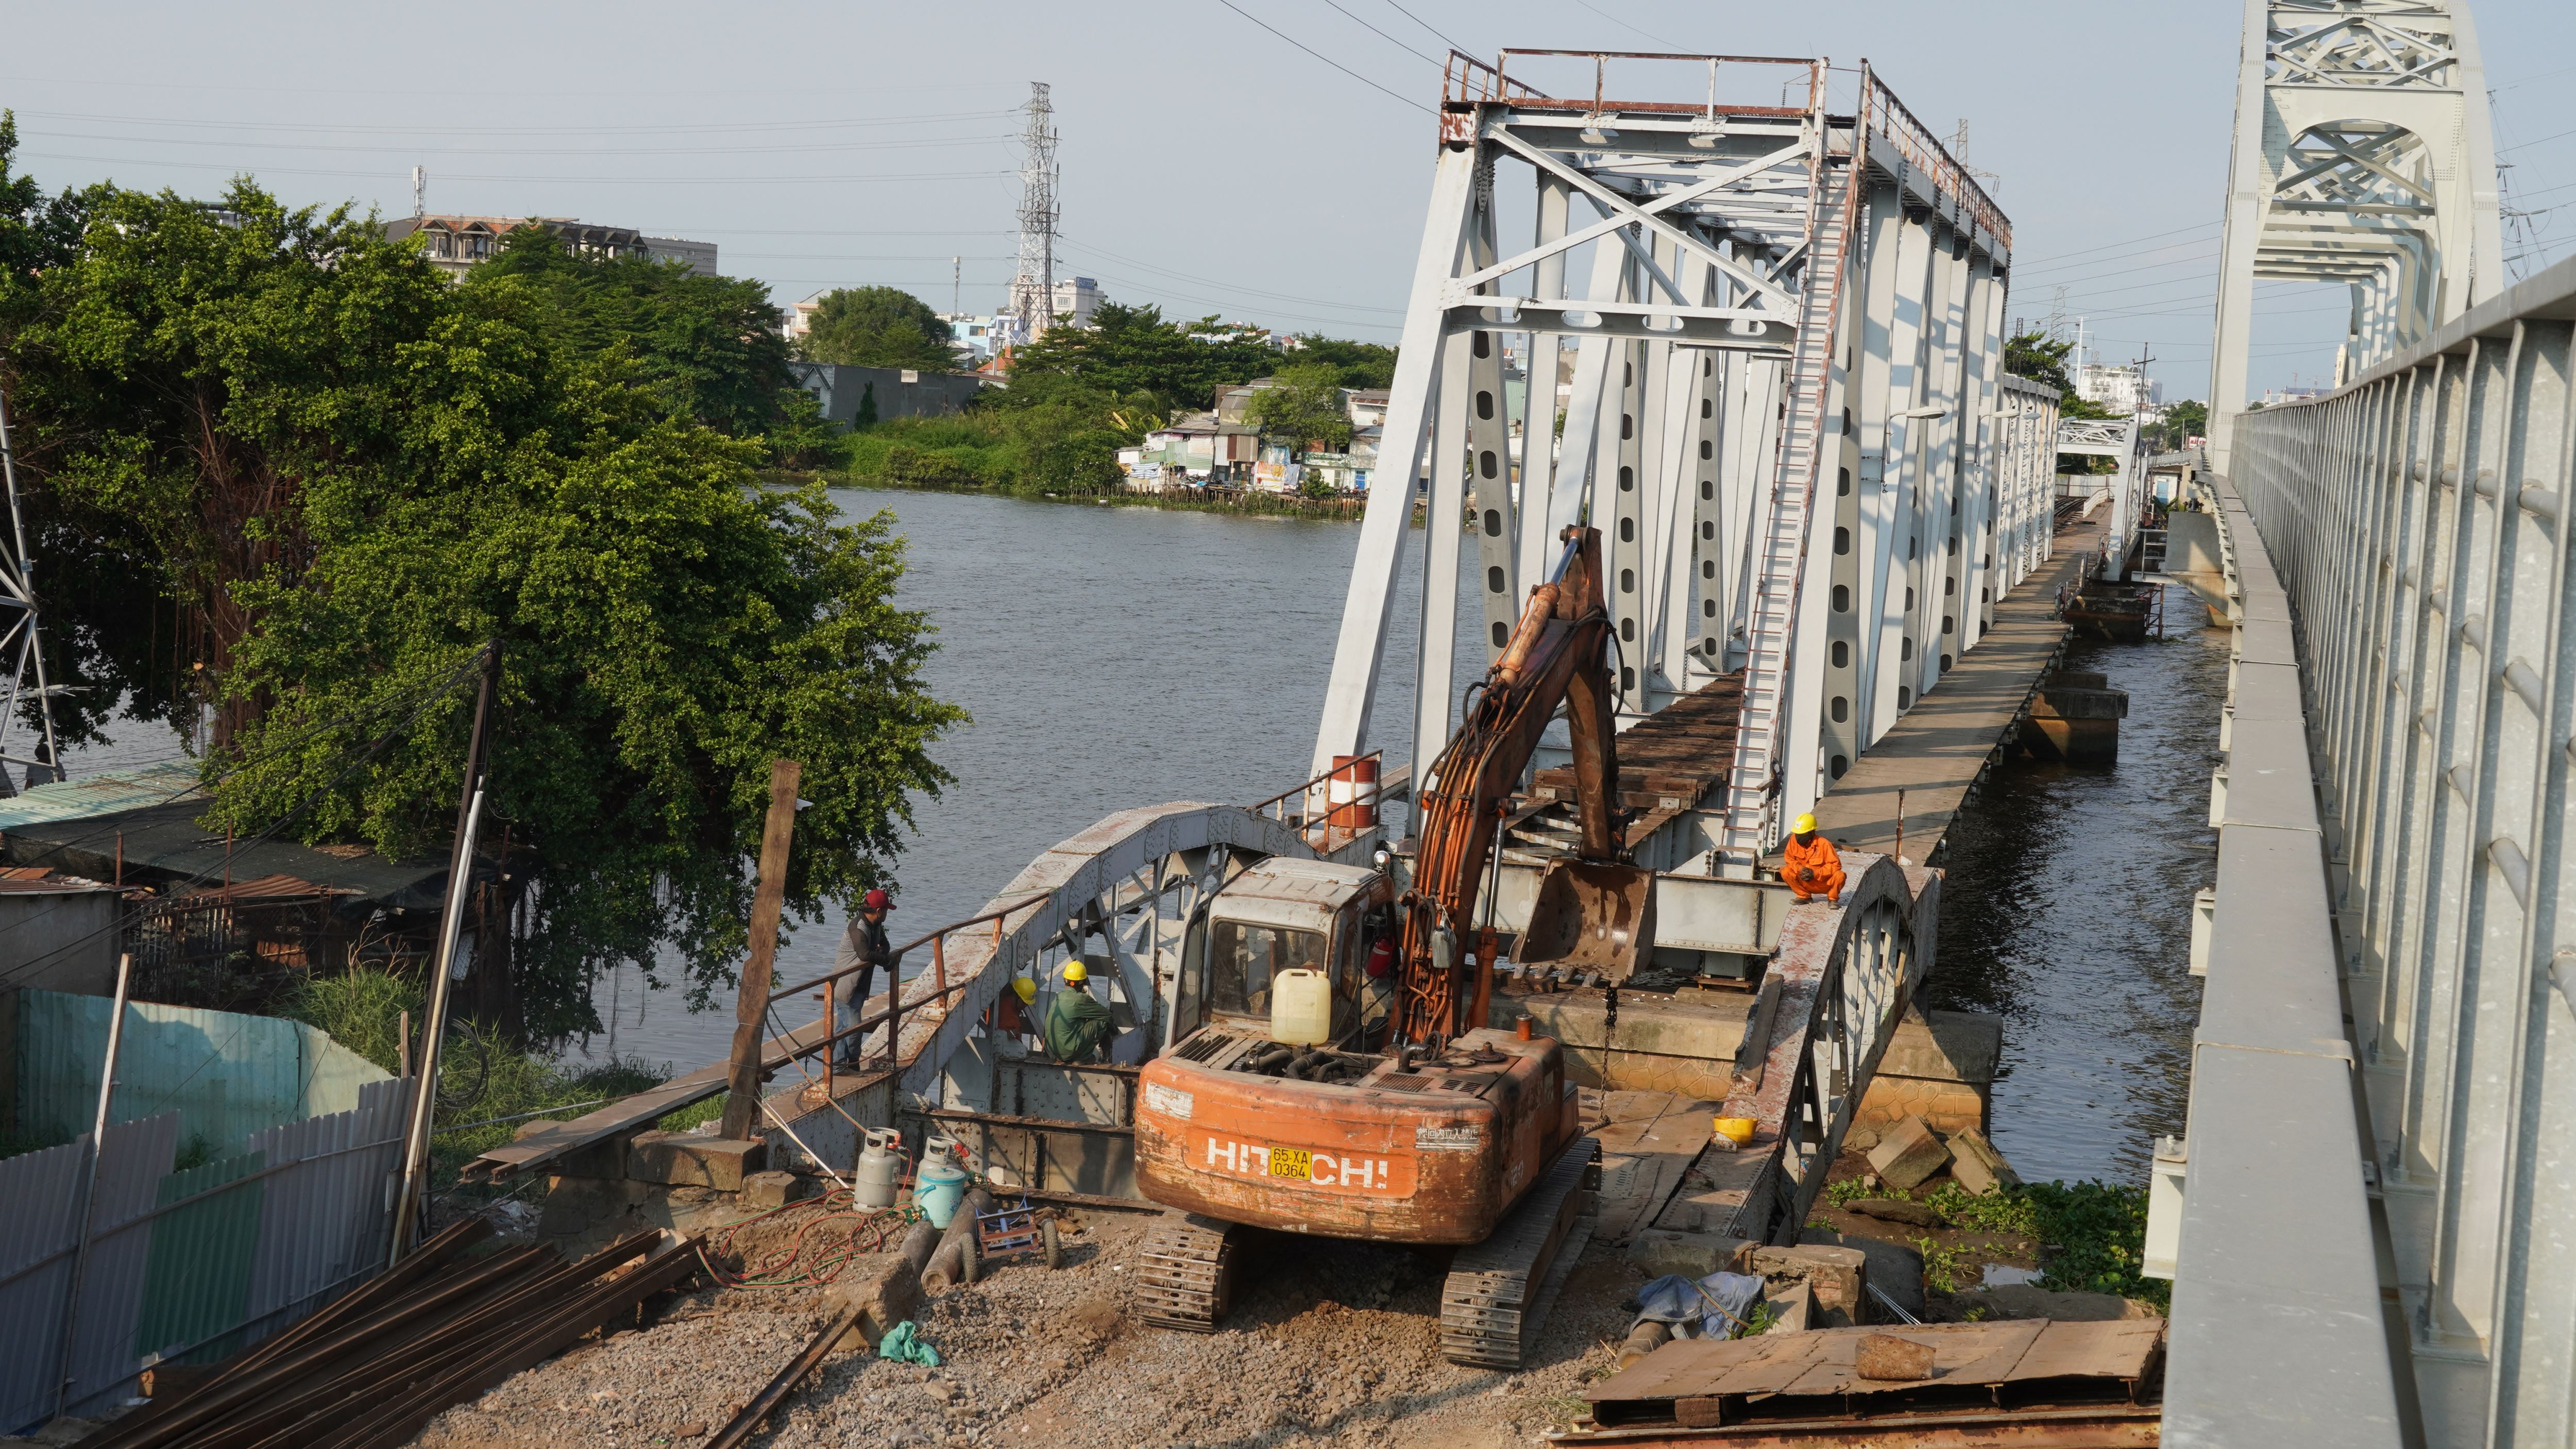 Cầu sắt Bình Lợi cũ là chiếc cầu đường sắt vượt sông Sài Gòn đầu tiên được xây dựng năm 1902. Do độ tĩnh không thông thuyền thấp khoảng 1,8m nên thời gian đầu, cây cầu có nhịp cầu quay ở phía bờ quận Thủ Đức cho tàu thuyền qua lại.